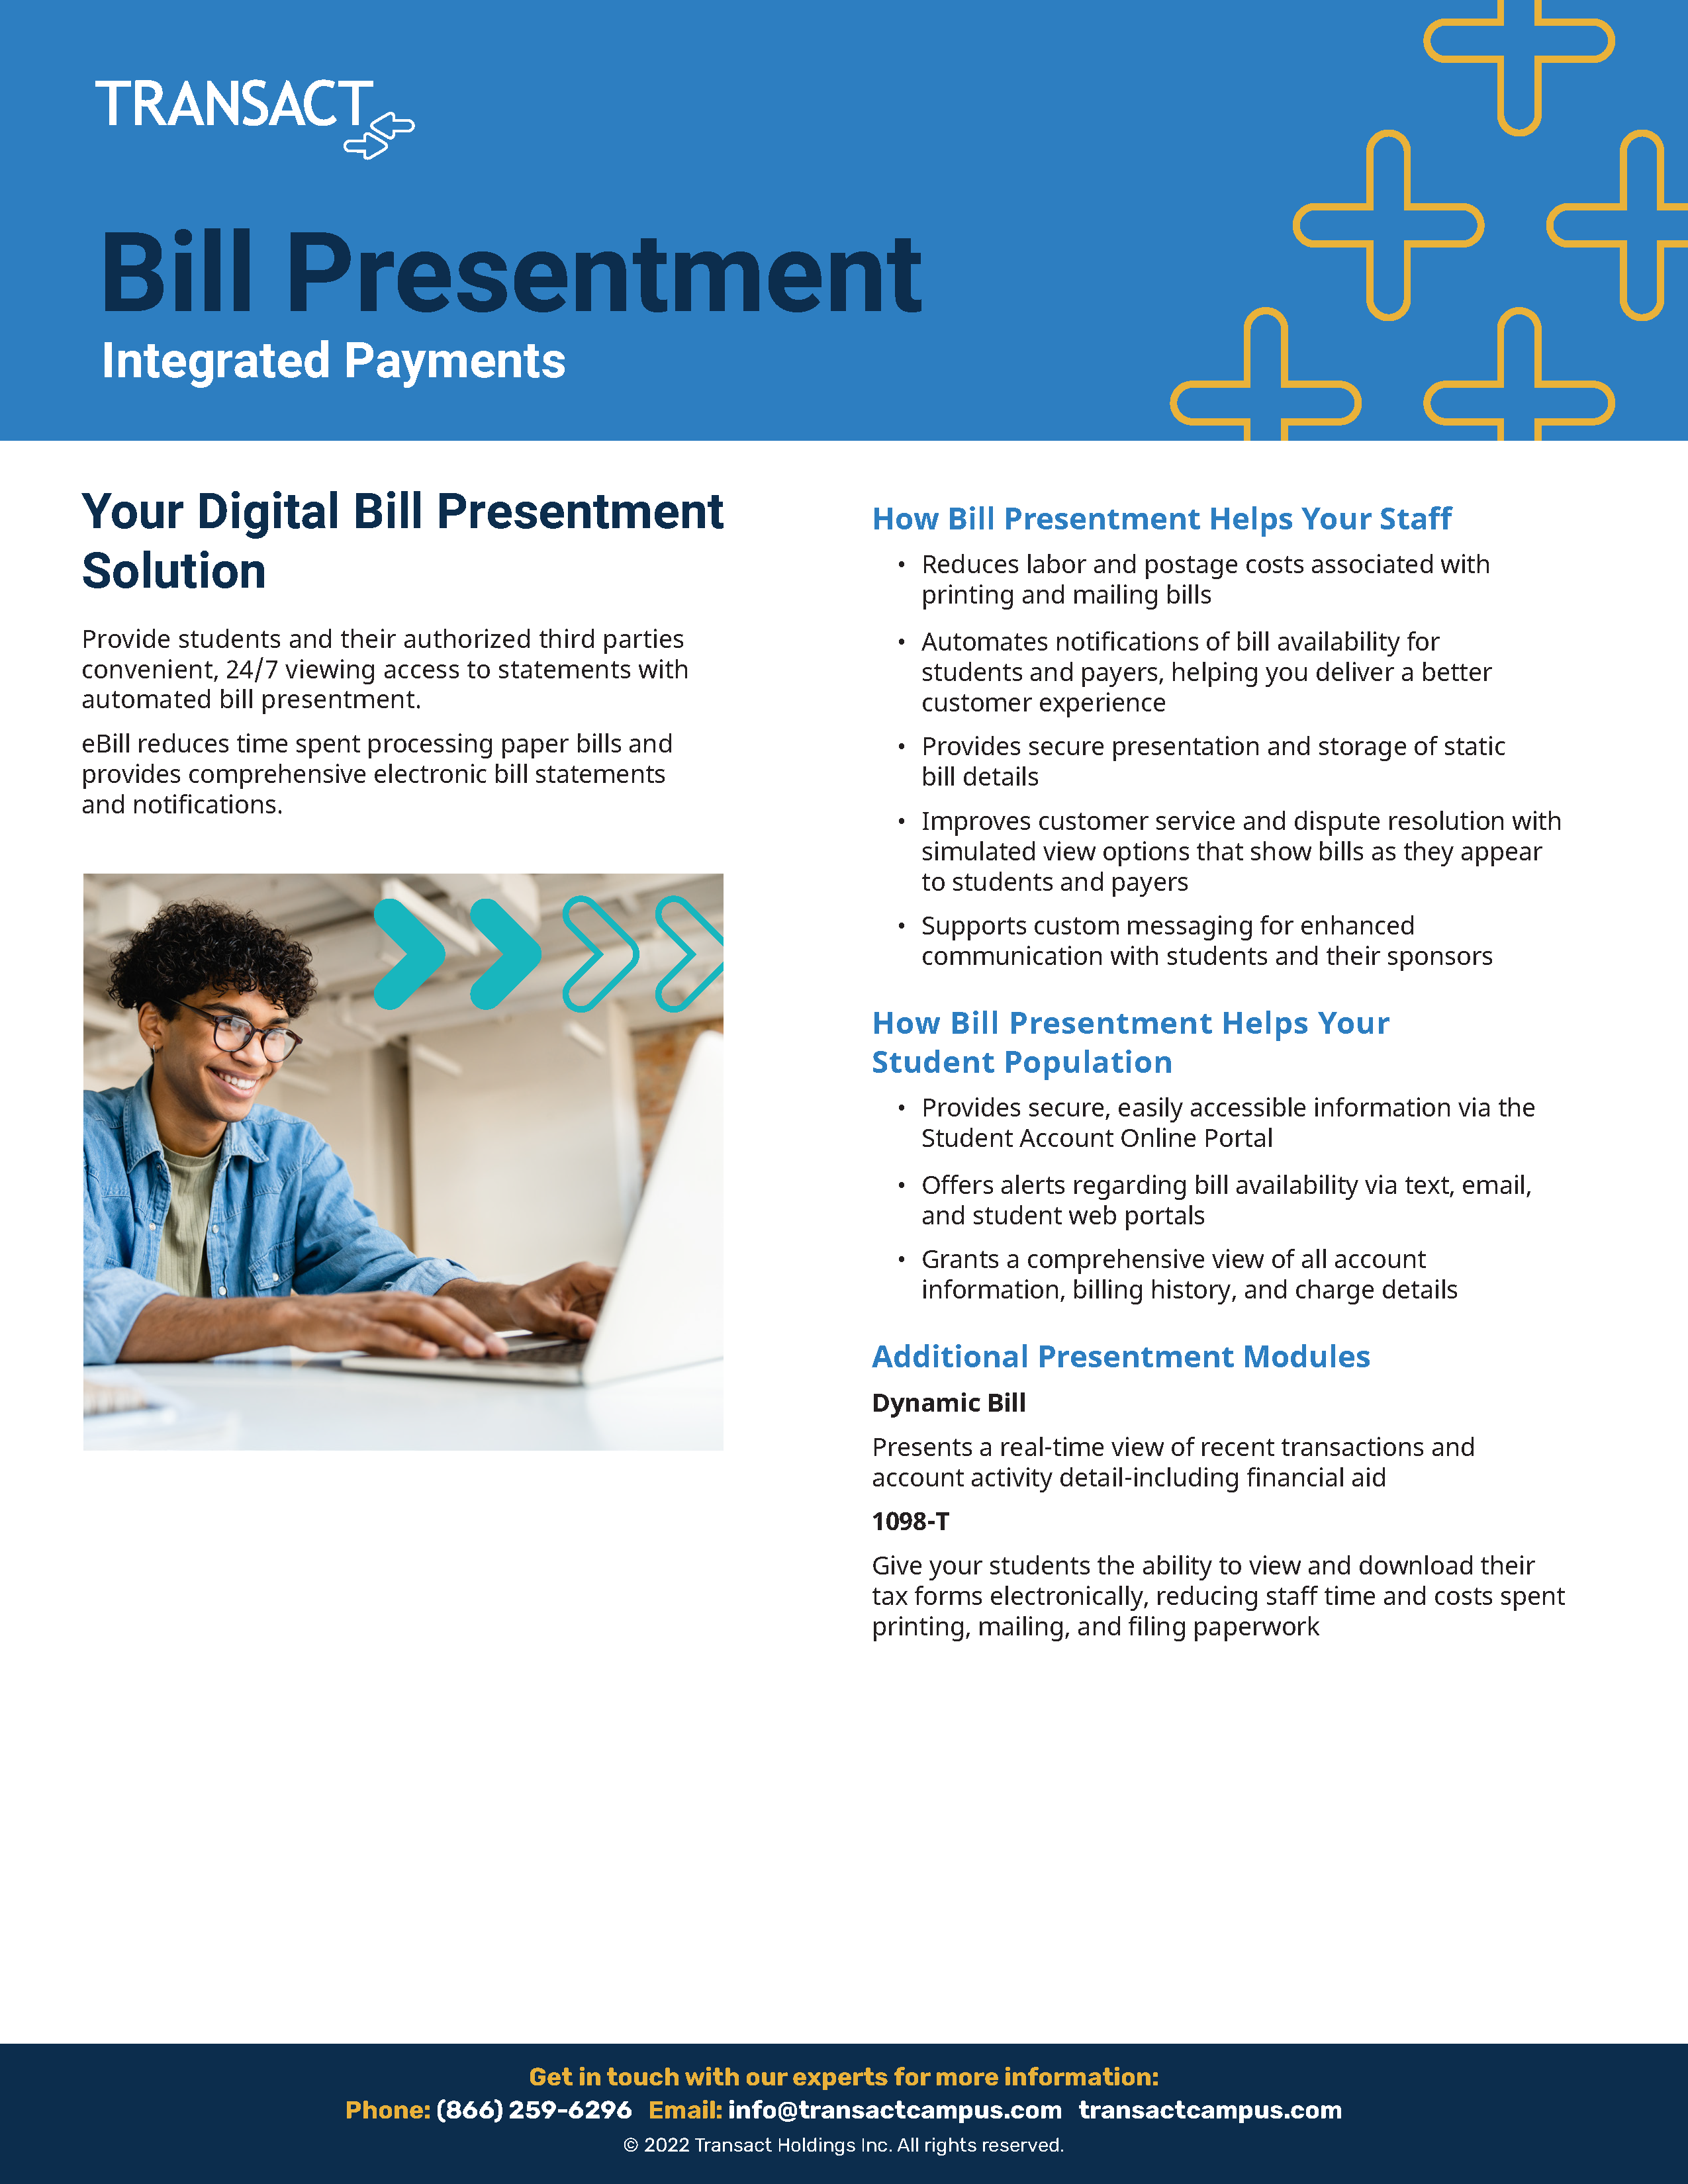 Bill Presentment